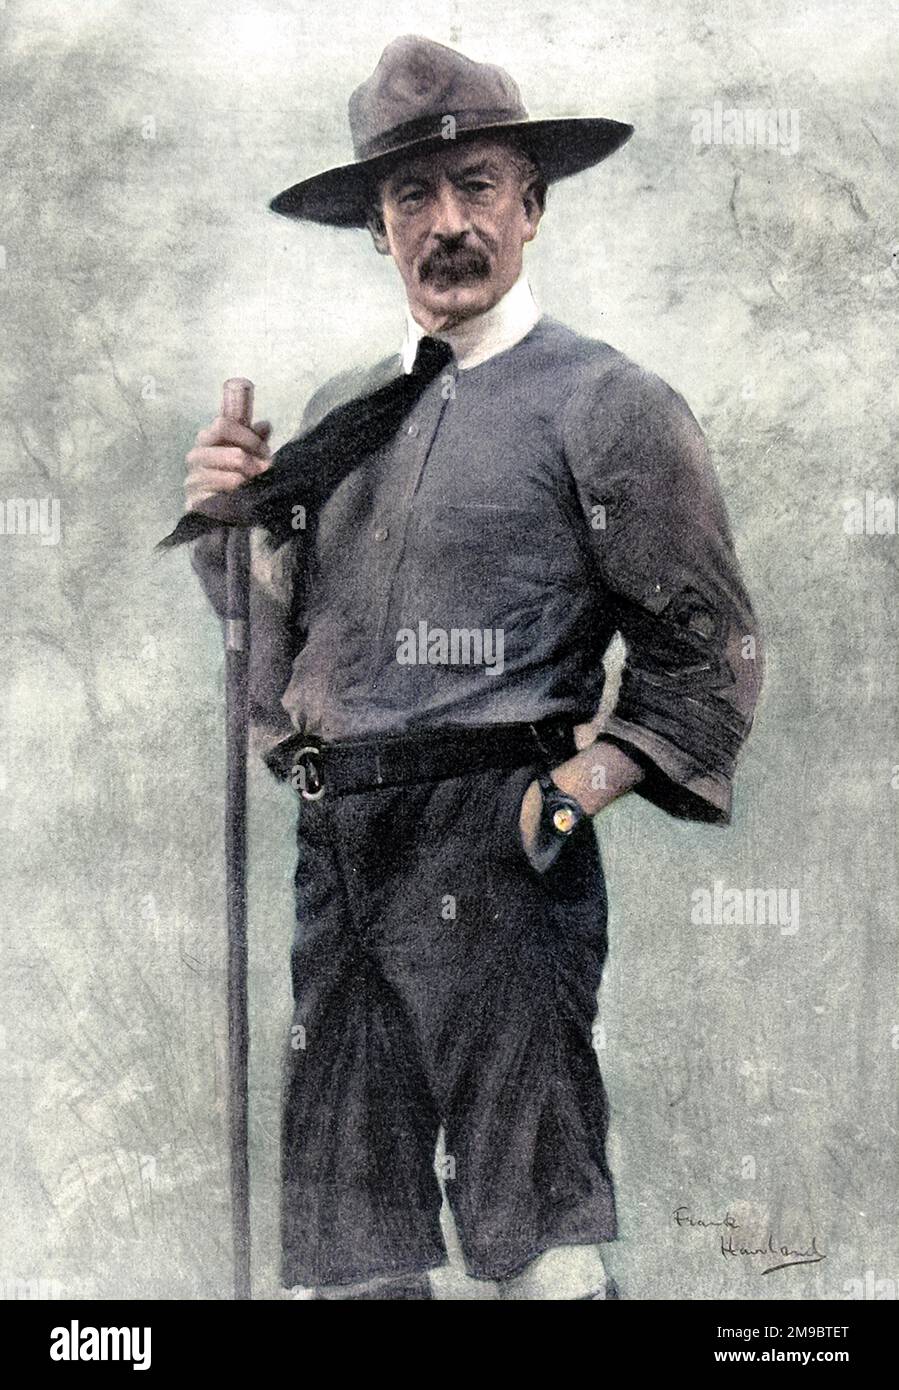 Robert Baden-Powell, 1st Baron Baden-Powell (1857 - 1941), soldat anglais et fondateur des scouts, photographié dans son uniforme scout en chef. Banque D'Images